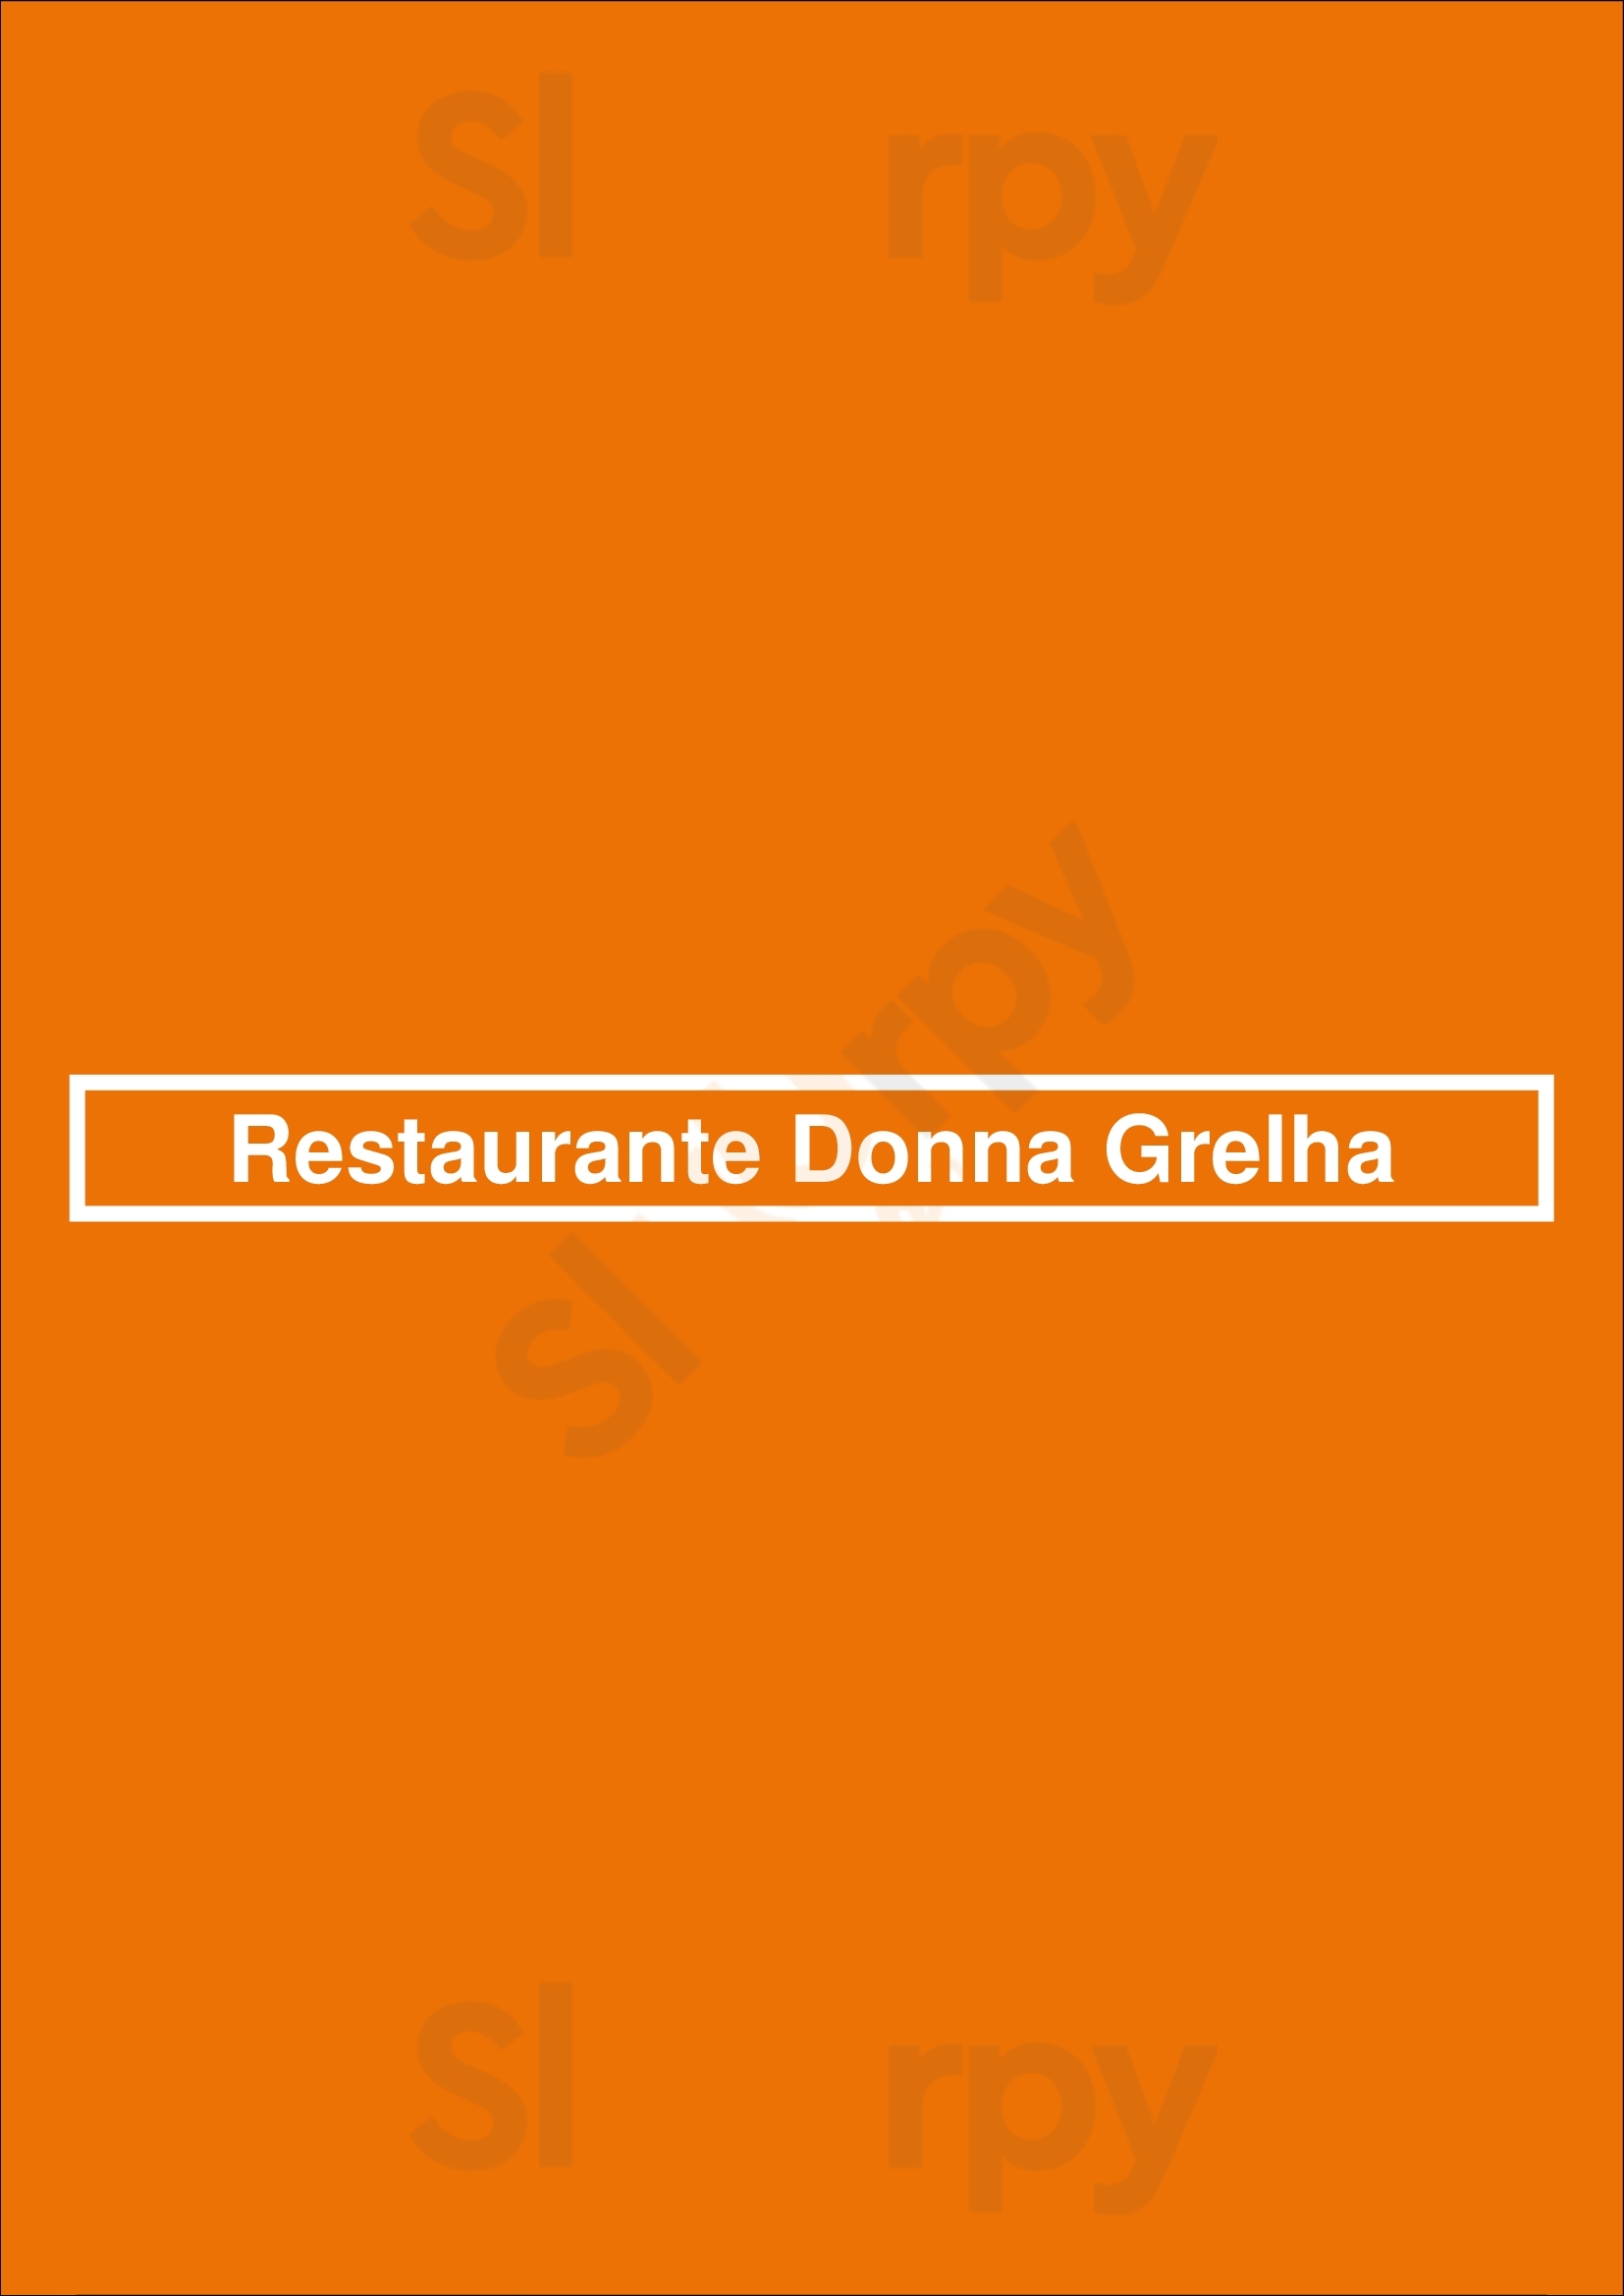 Restaurante Donna Grelha Esposende Menu - 1